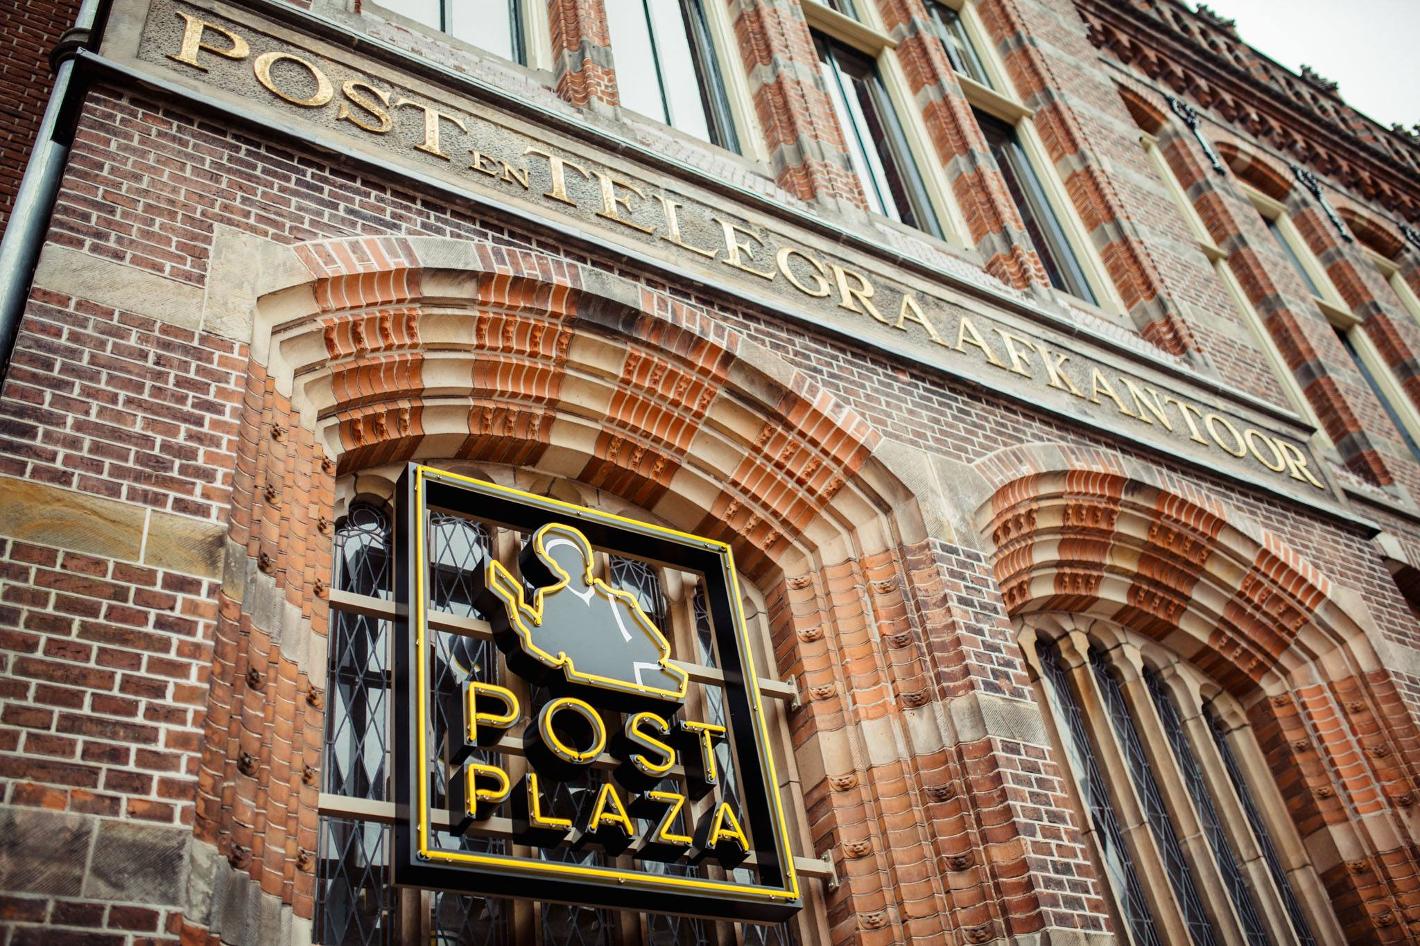 Foto Post-Plaza Hotel & Grand Café in Leeuwarden, Schlafen, Hotels & unterkünfte - #1